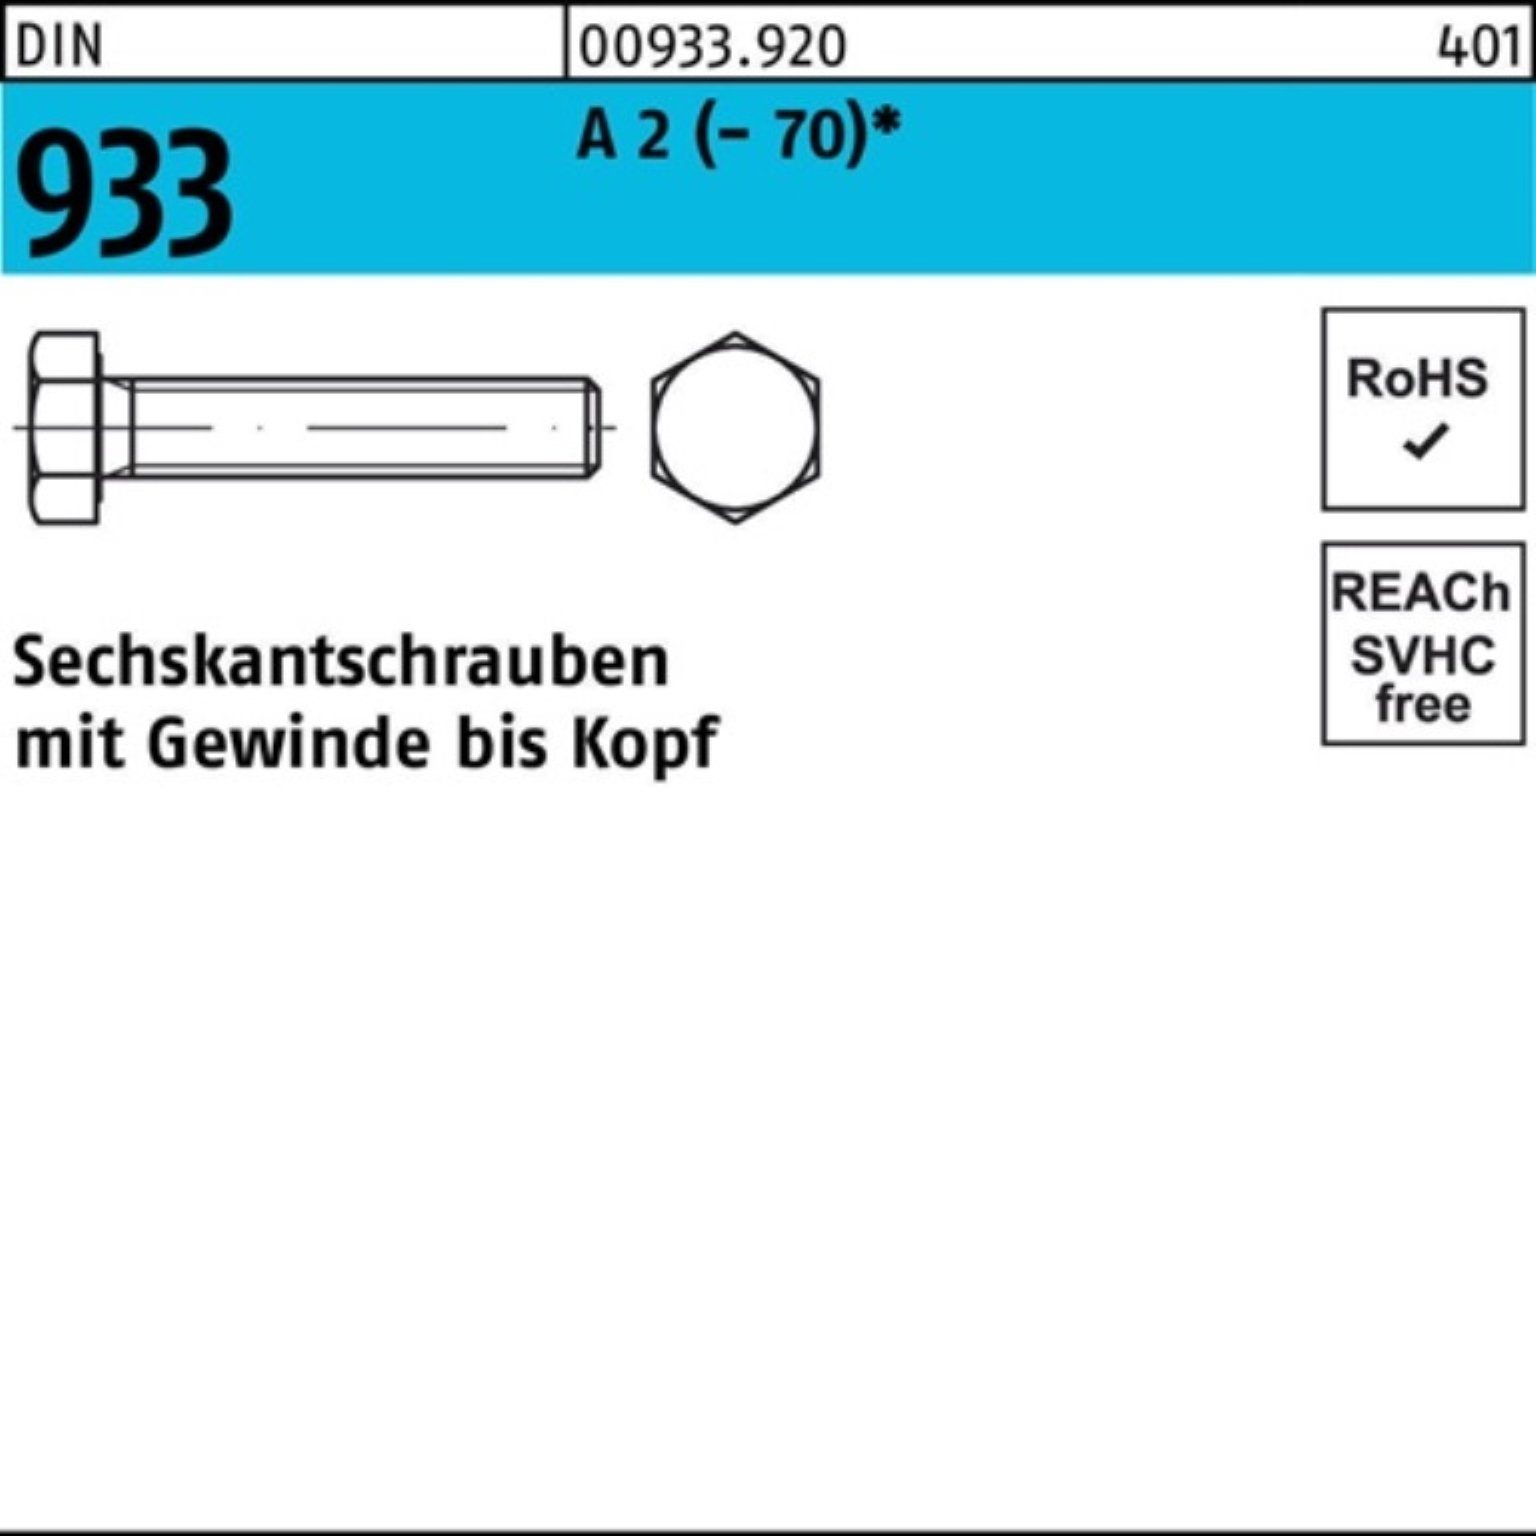 Reyher Sechskantschraube 200er Pack Sechskantschraube DIN 933 VG M8x 20 A 2 (70) 200 Stück D